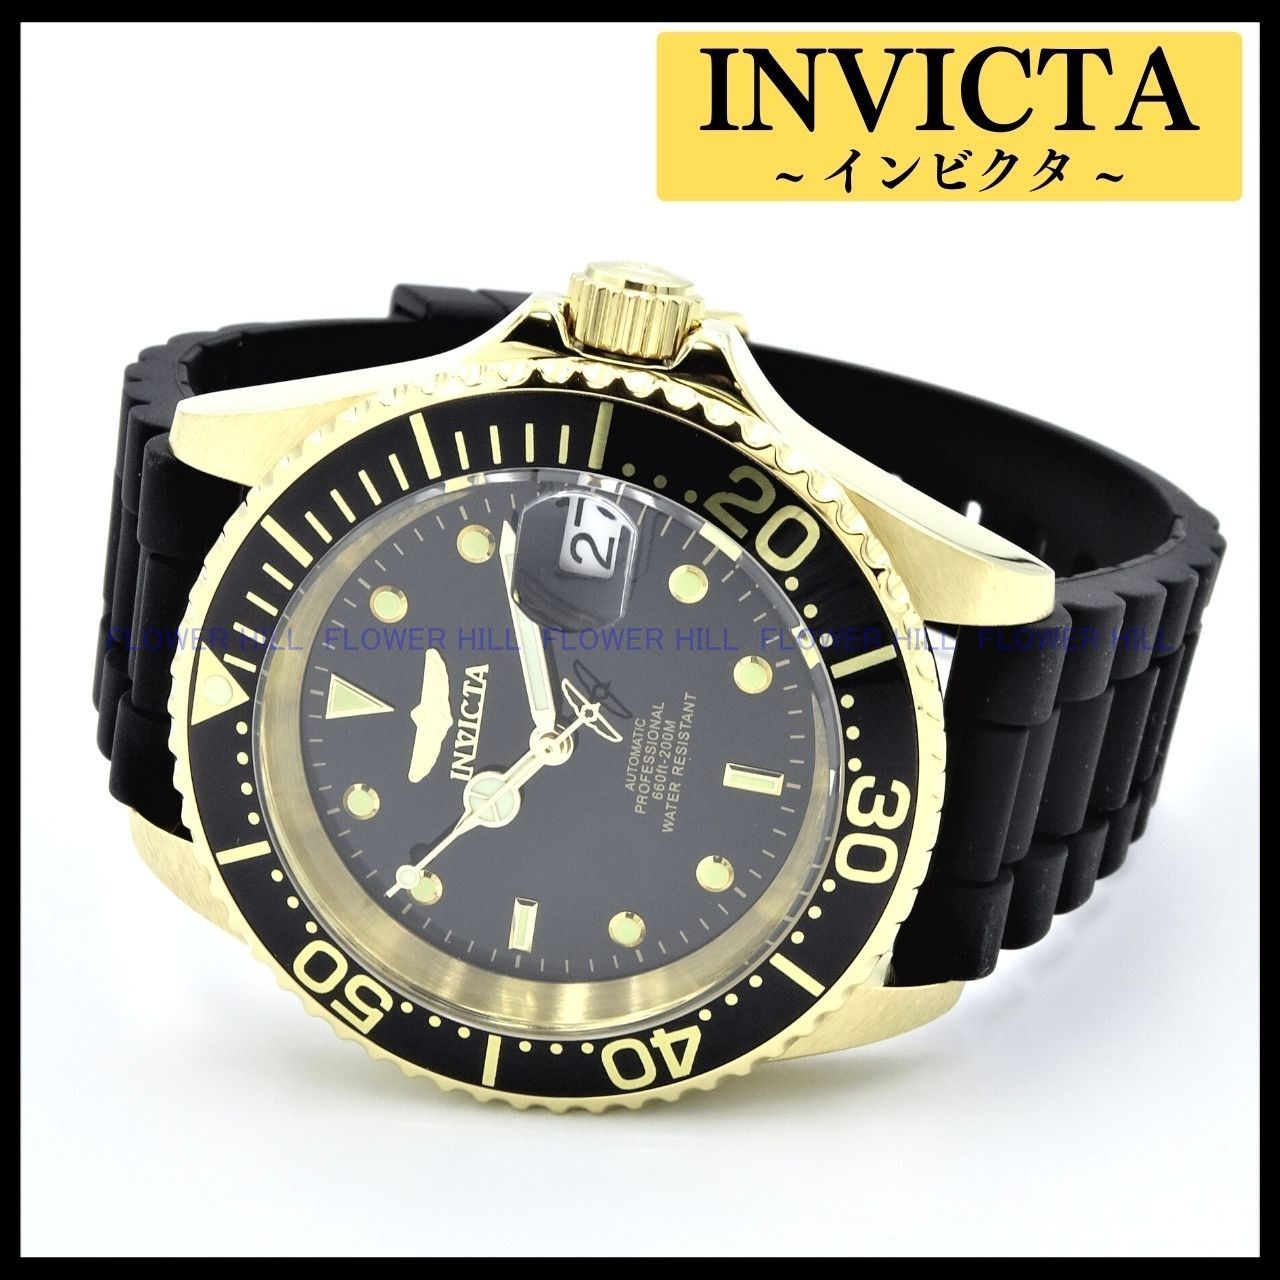 同時購入Invicta 腕時計 腕時計(アナログ)